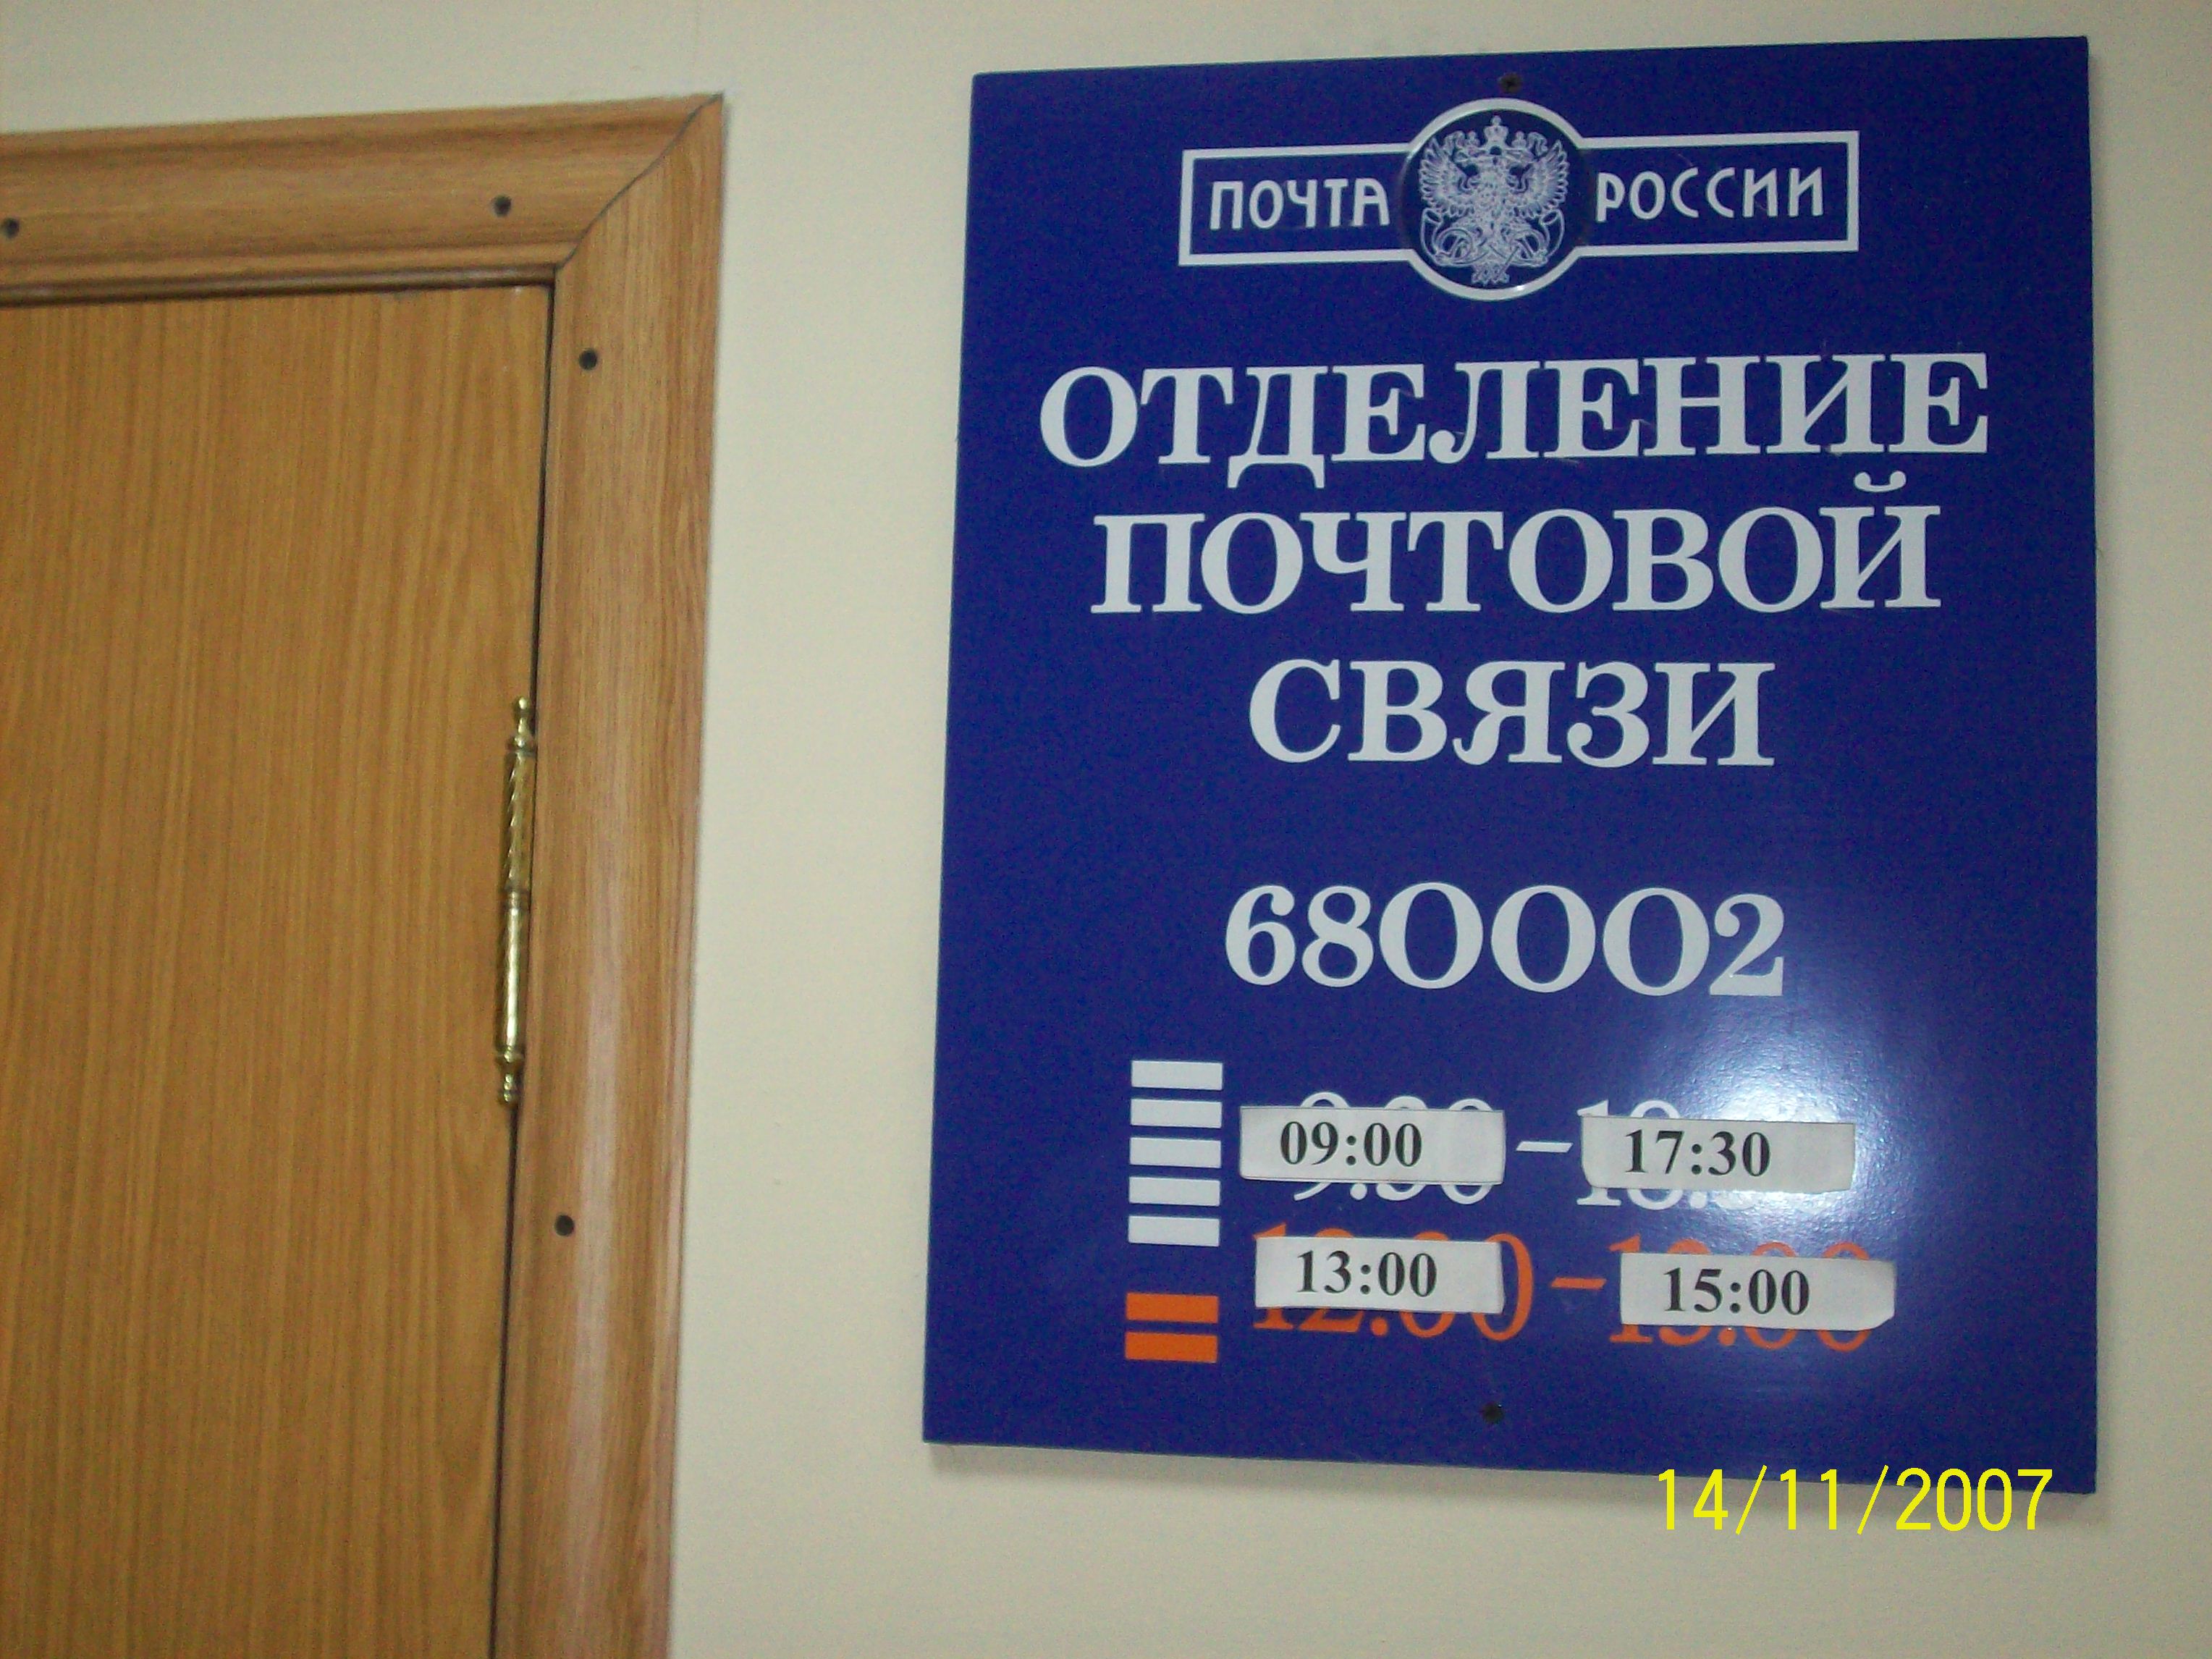 ФАСАД, отделение почтовой связи 680002, Хабаровский край, Хабаровск